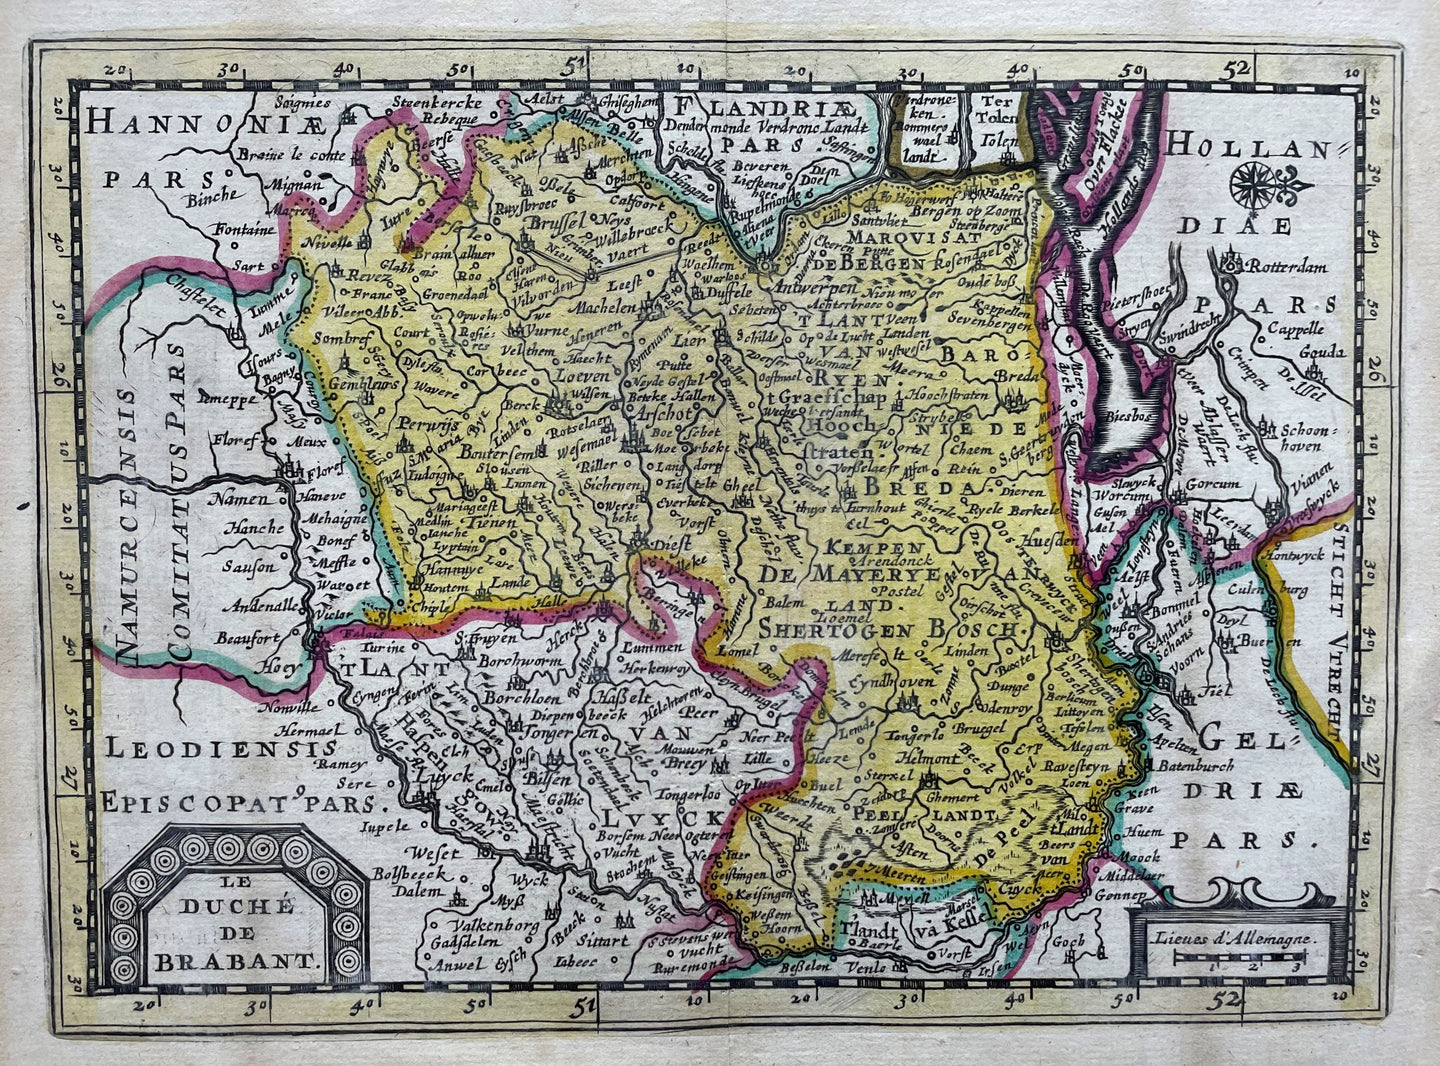 Brabant - Pieter van der Aa - circa 1714